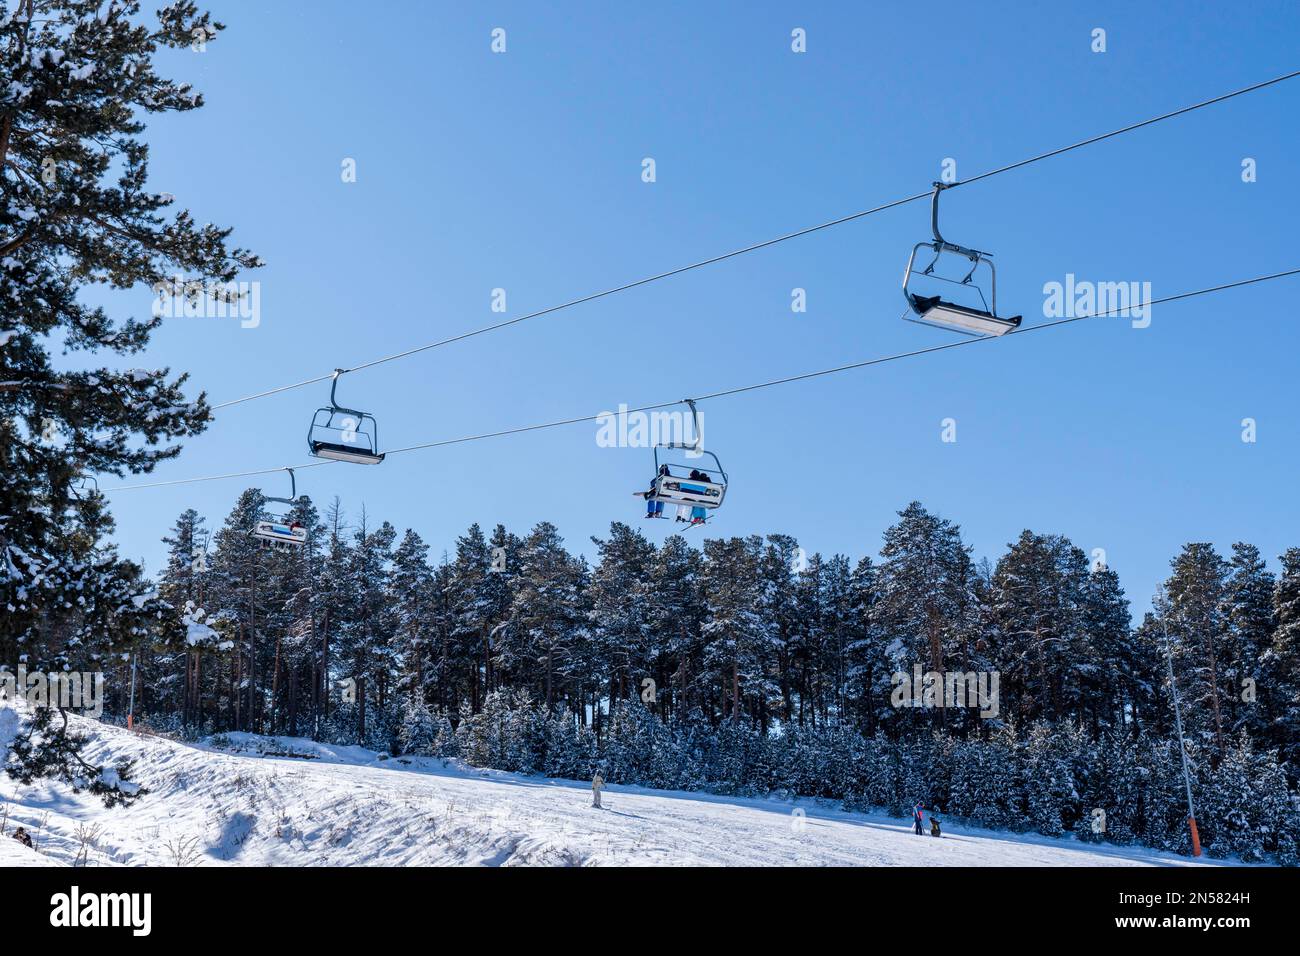 Ski Lift contre le ciel bleu et la forêt.concept de saison d'hiver. Photo de haute qualité Banque D'Images